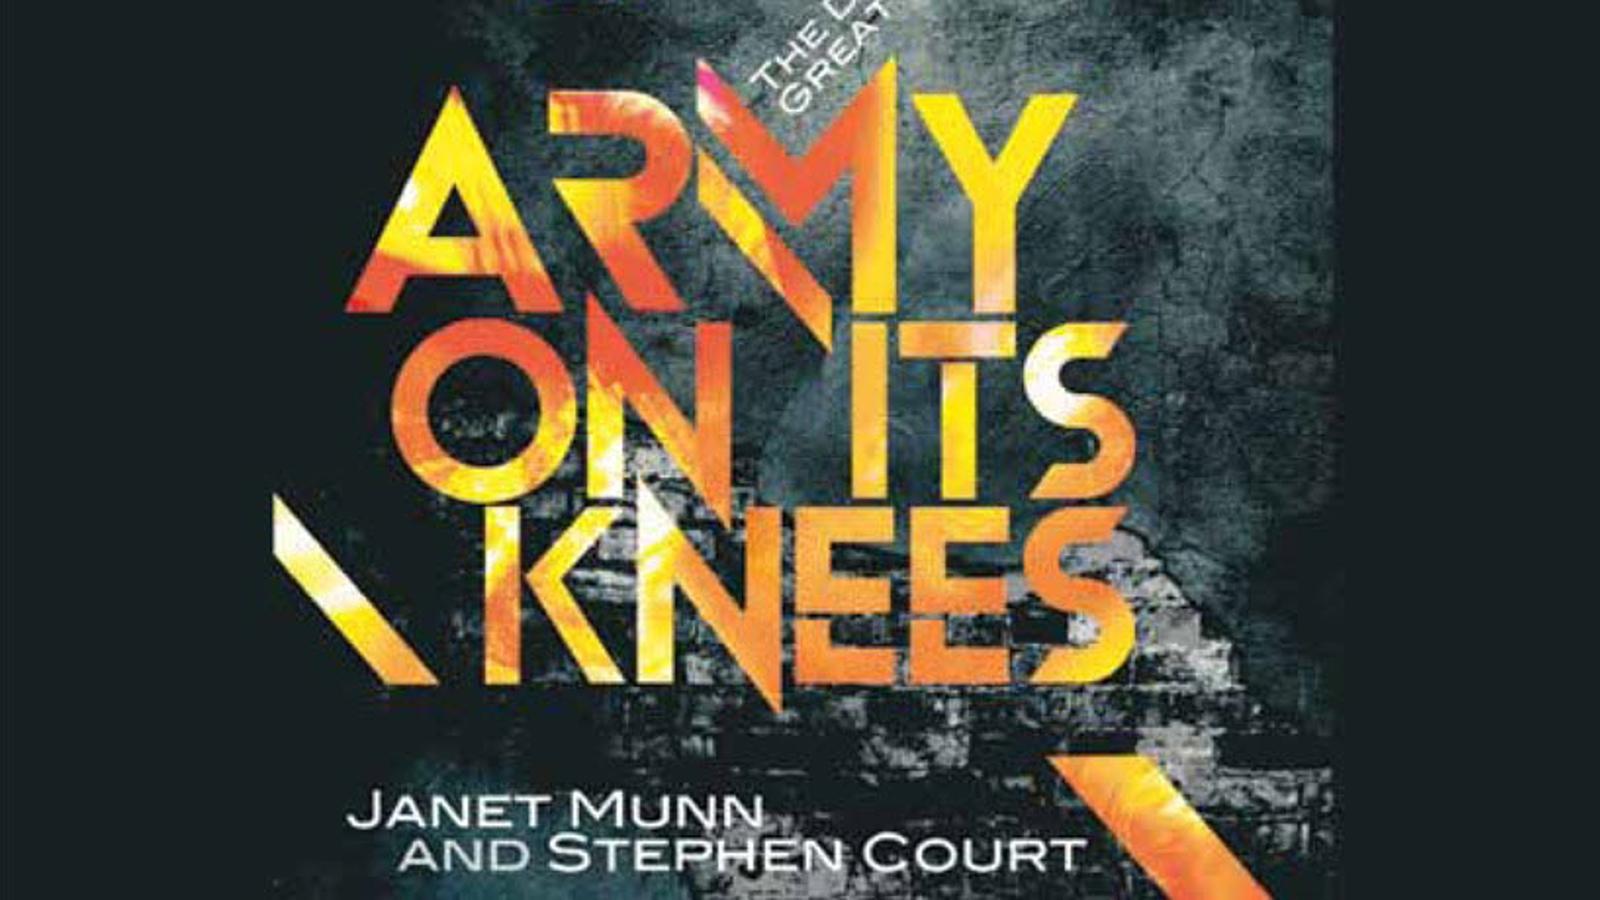 Omslaget av boken "Army on its knees".